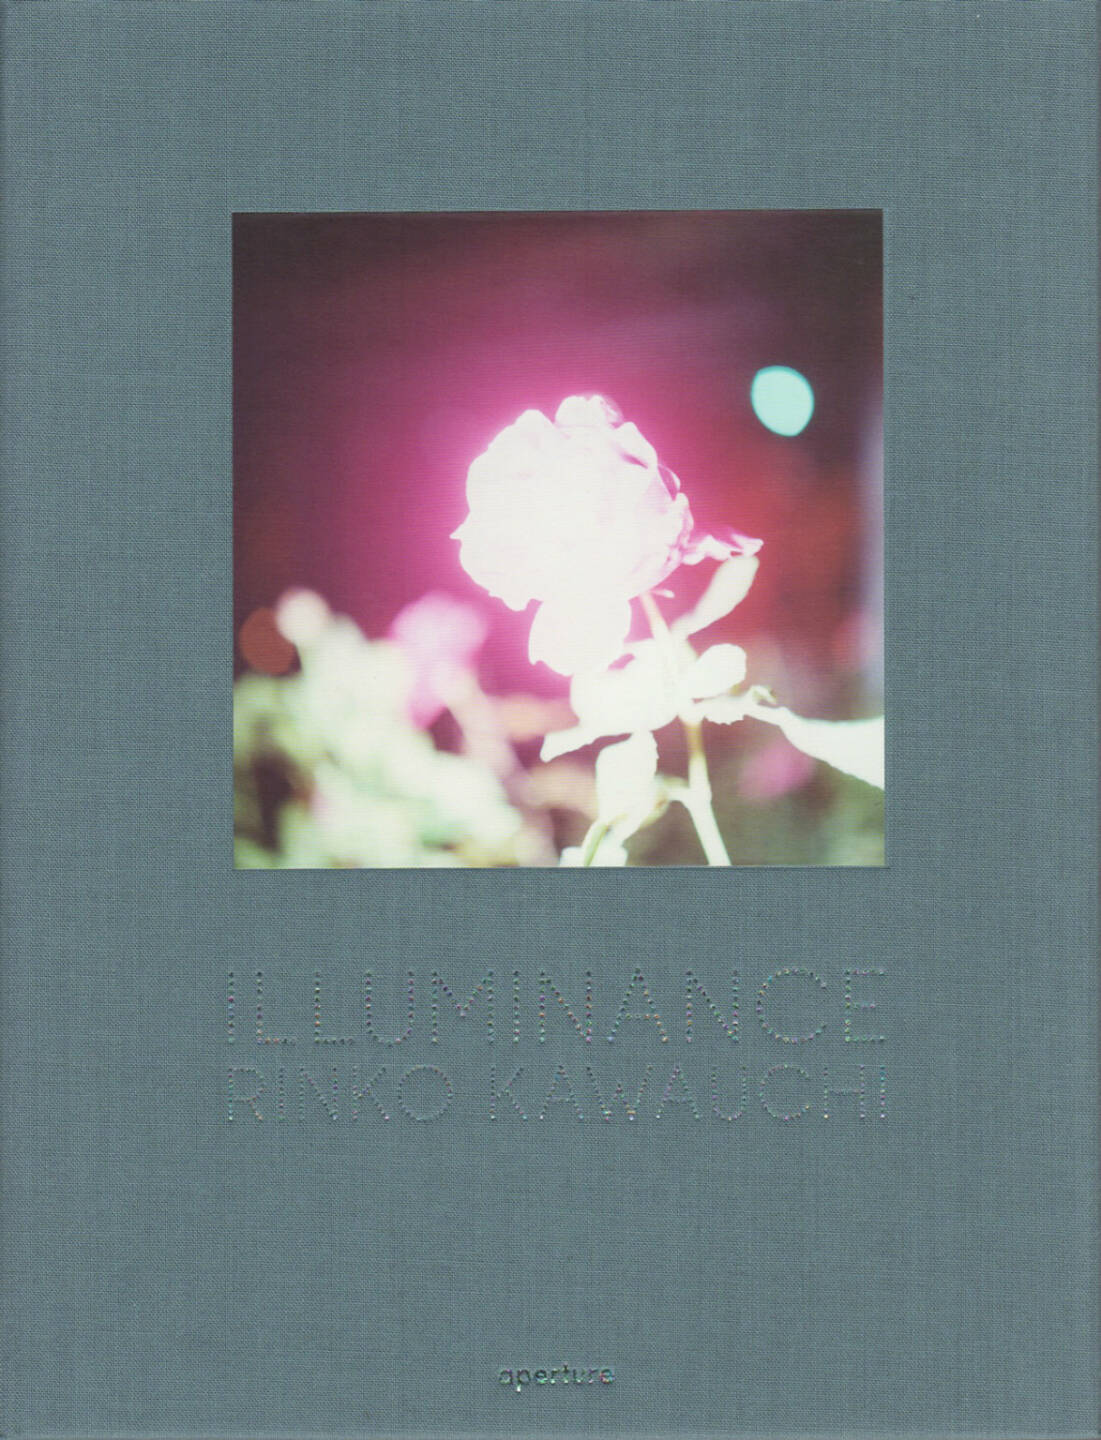 Rinko Kawauchi - Illuminance, Aperture, 2011, Cover - http://josefchladek.com/book/rinko_kawauchi_-_illuminance